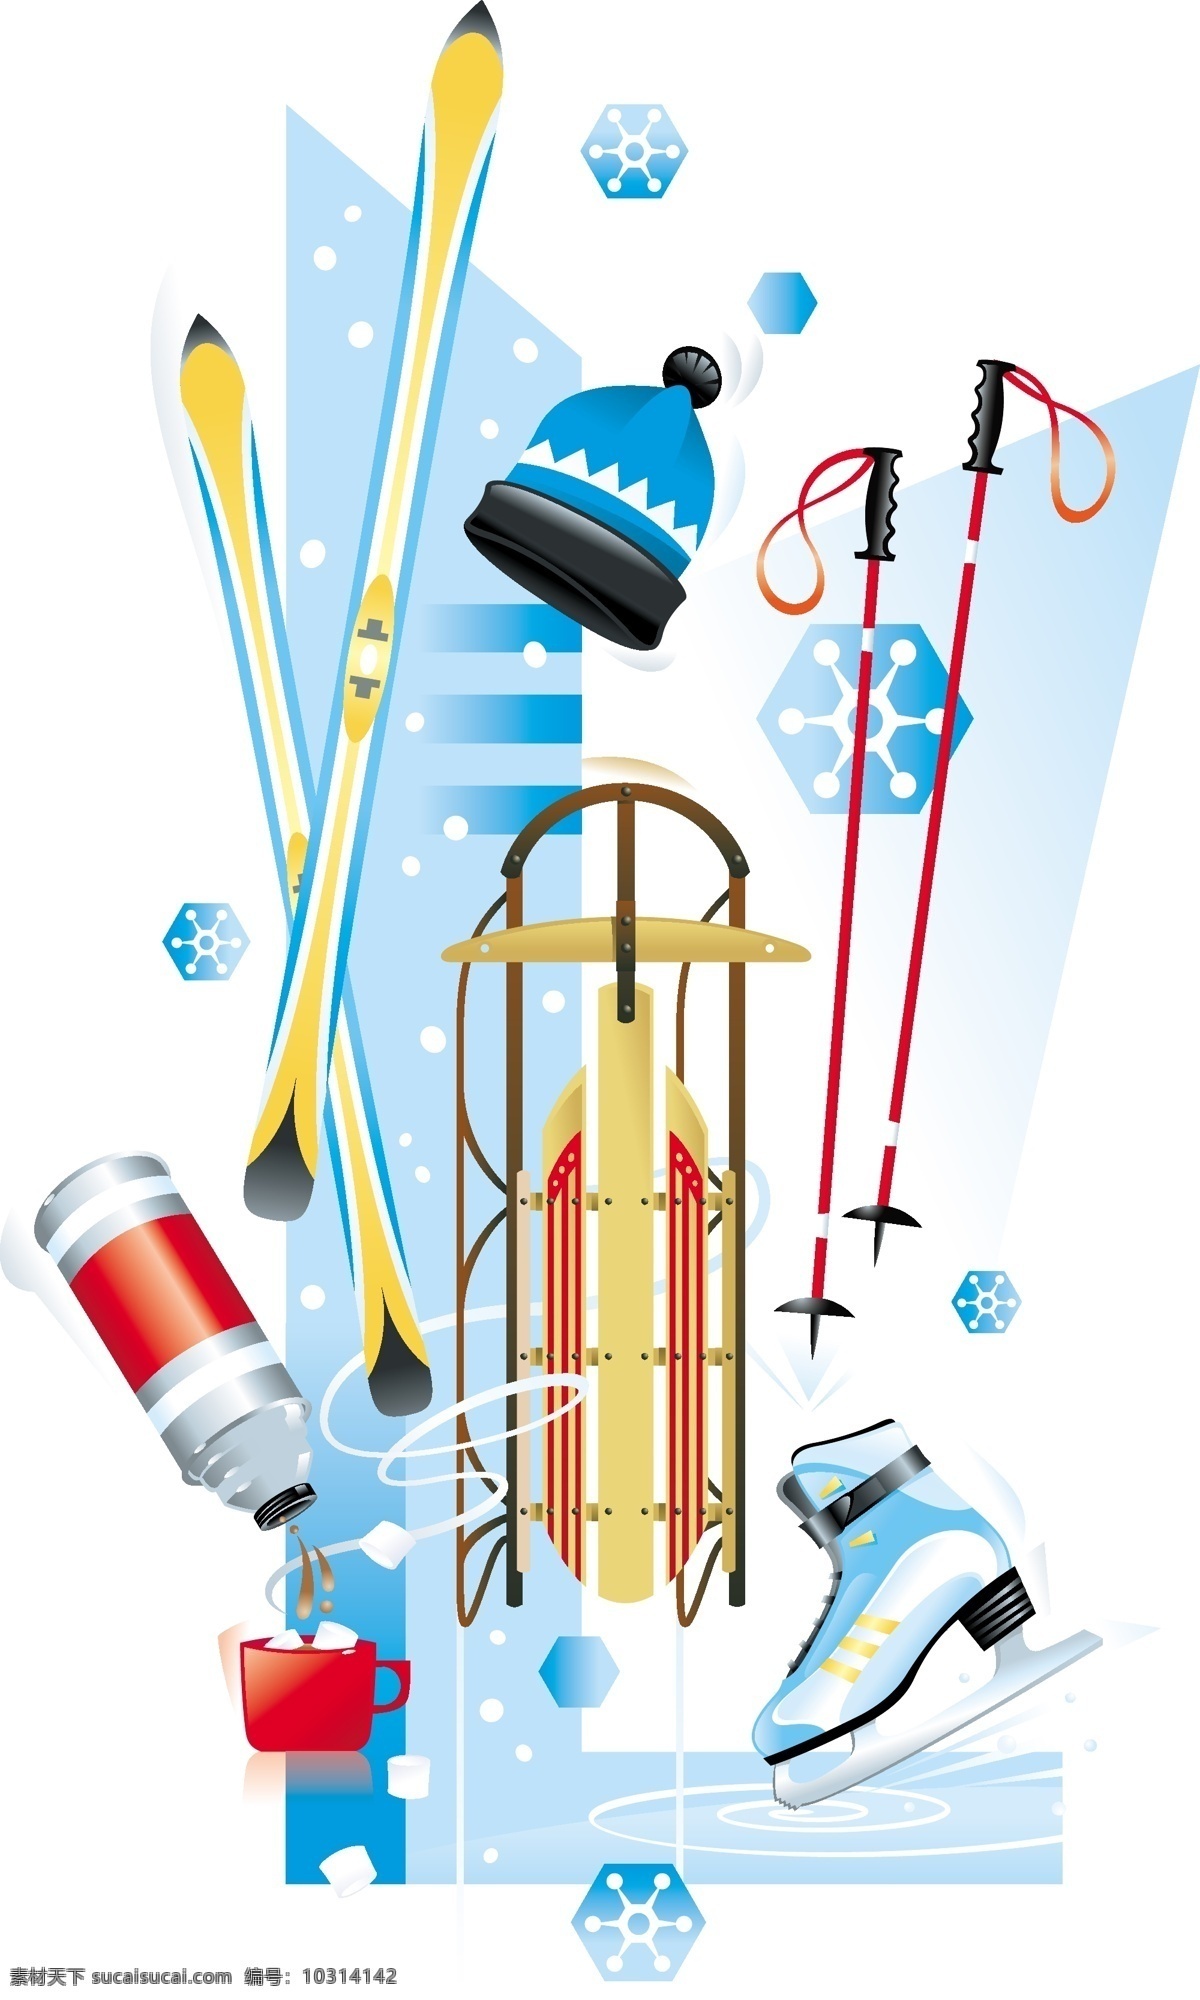 冬季体育用品 滑冰鞋 滑雪车 滑雪板 帽子 滑雪杆 雪花 水壶 水杯 体育用品 体育运动 文化艺术 矢量